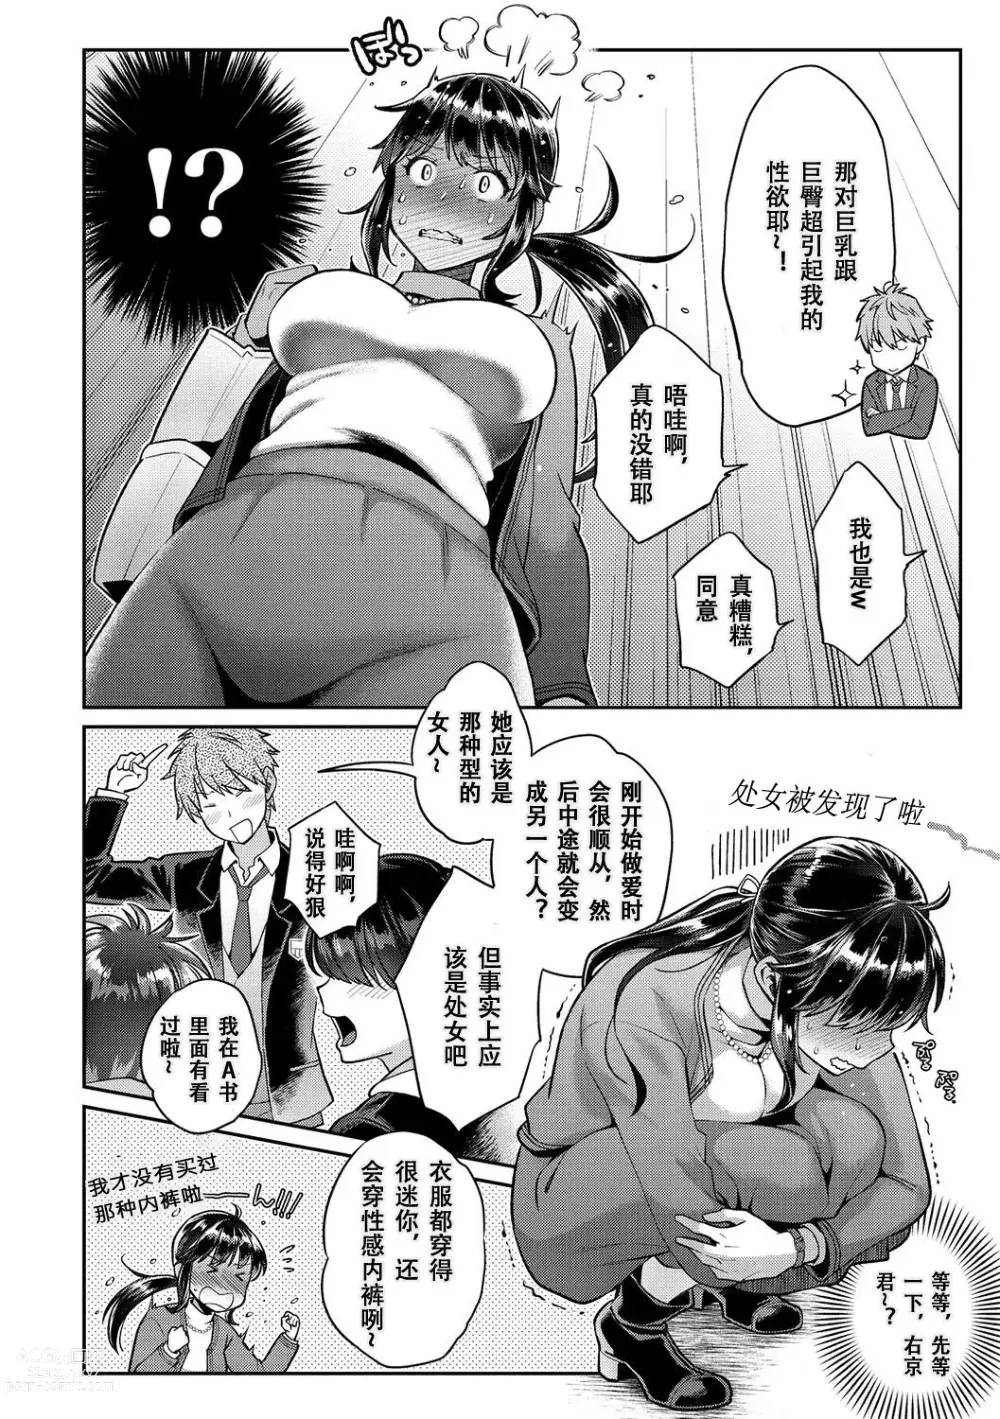 Page 20 of manga Ima... Shitai no